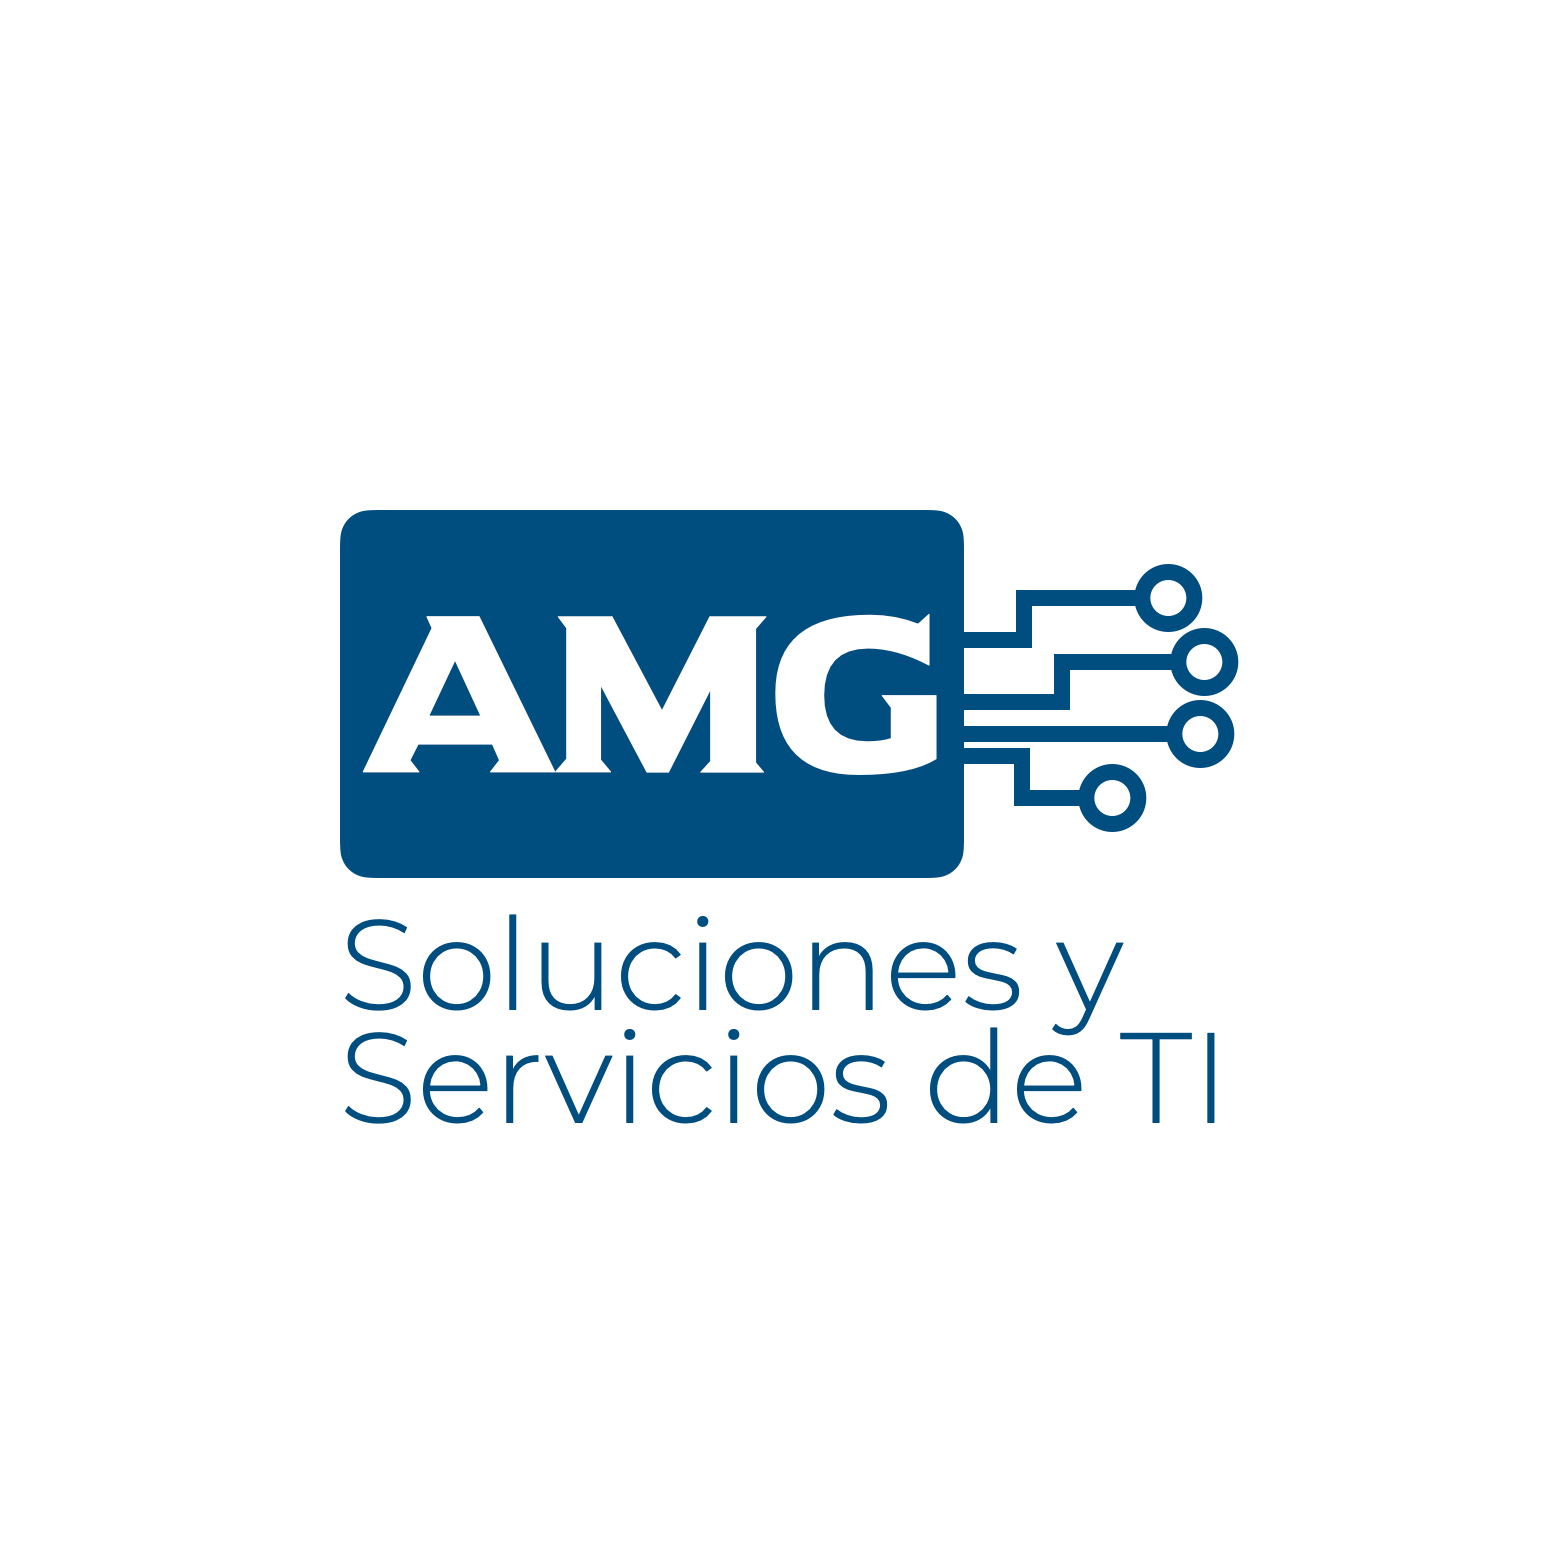 AMG Soluciones y Servicios de TI